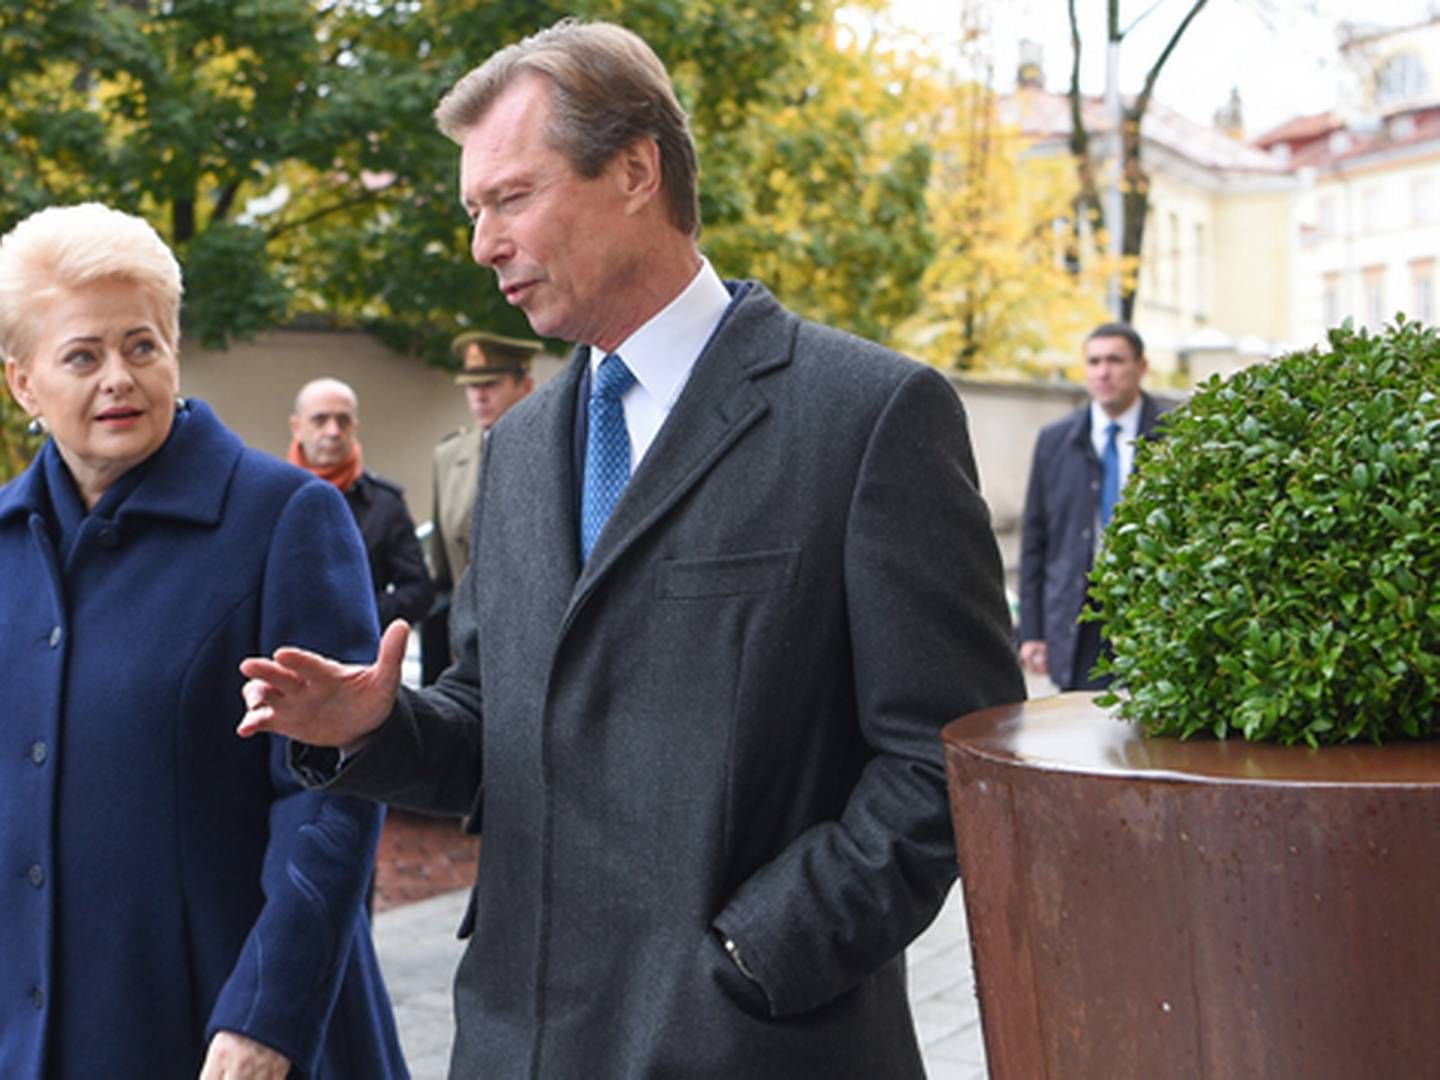 Litauens præsident Dalia Grybauskaité og Luxembourgs ærkehertug Henri indgik en sidste måned en aftale om køb af ve-procenter. | Foto: Robertas Dackus